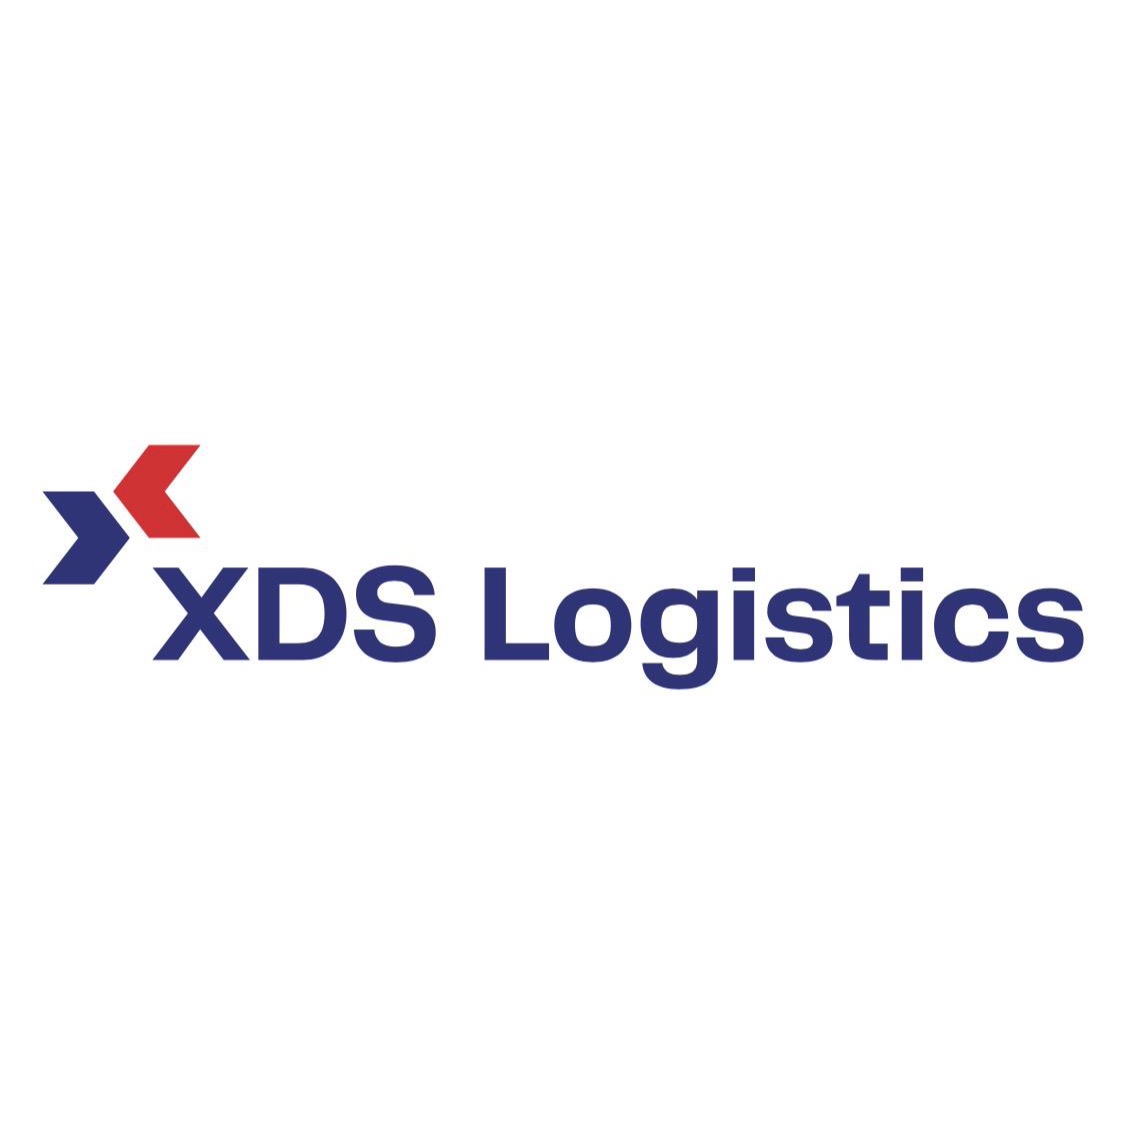 XDS Logistics Logo